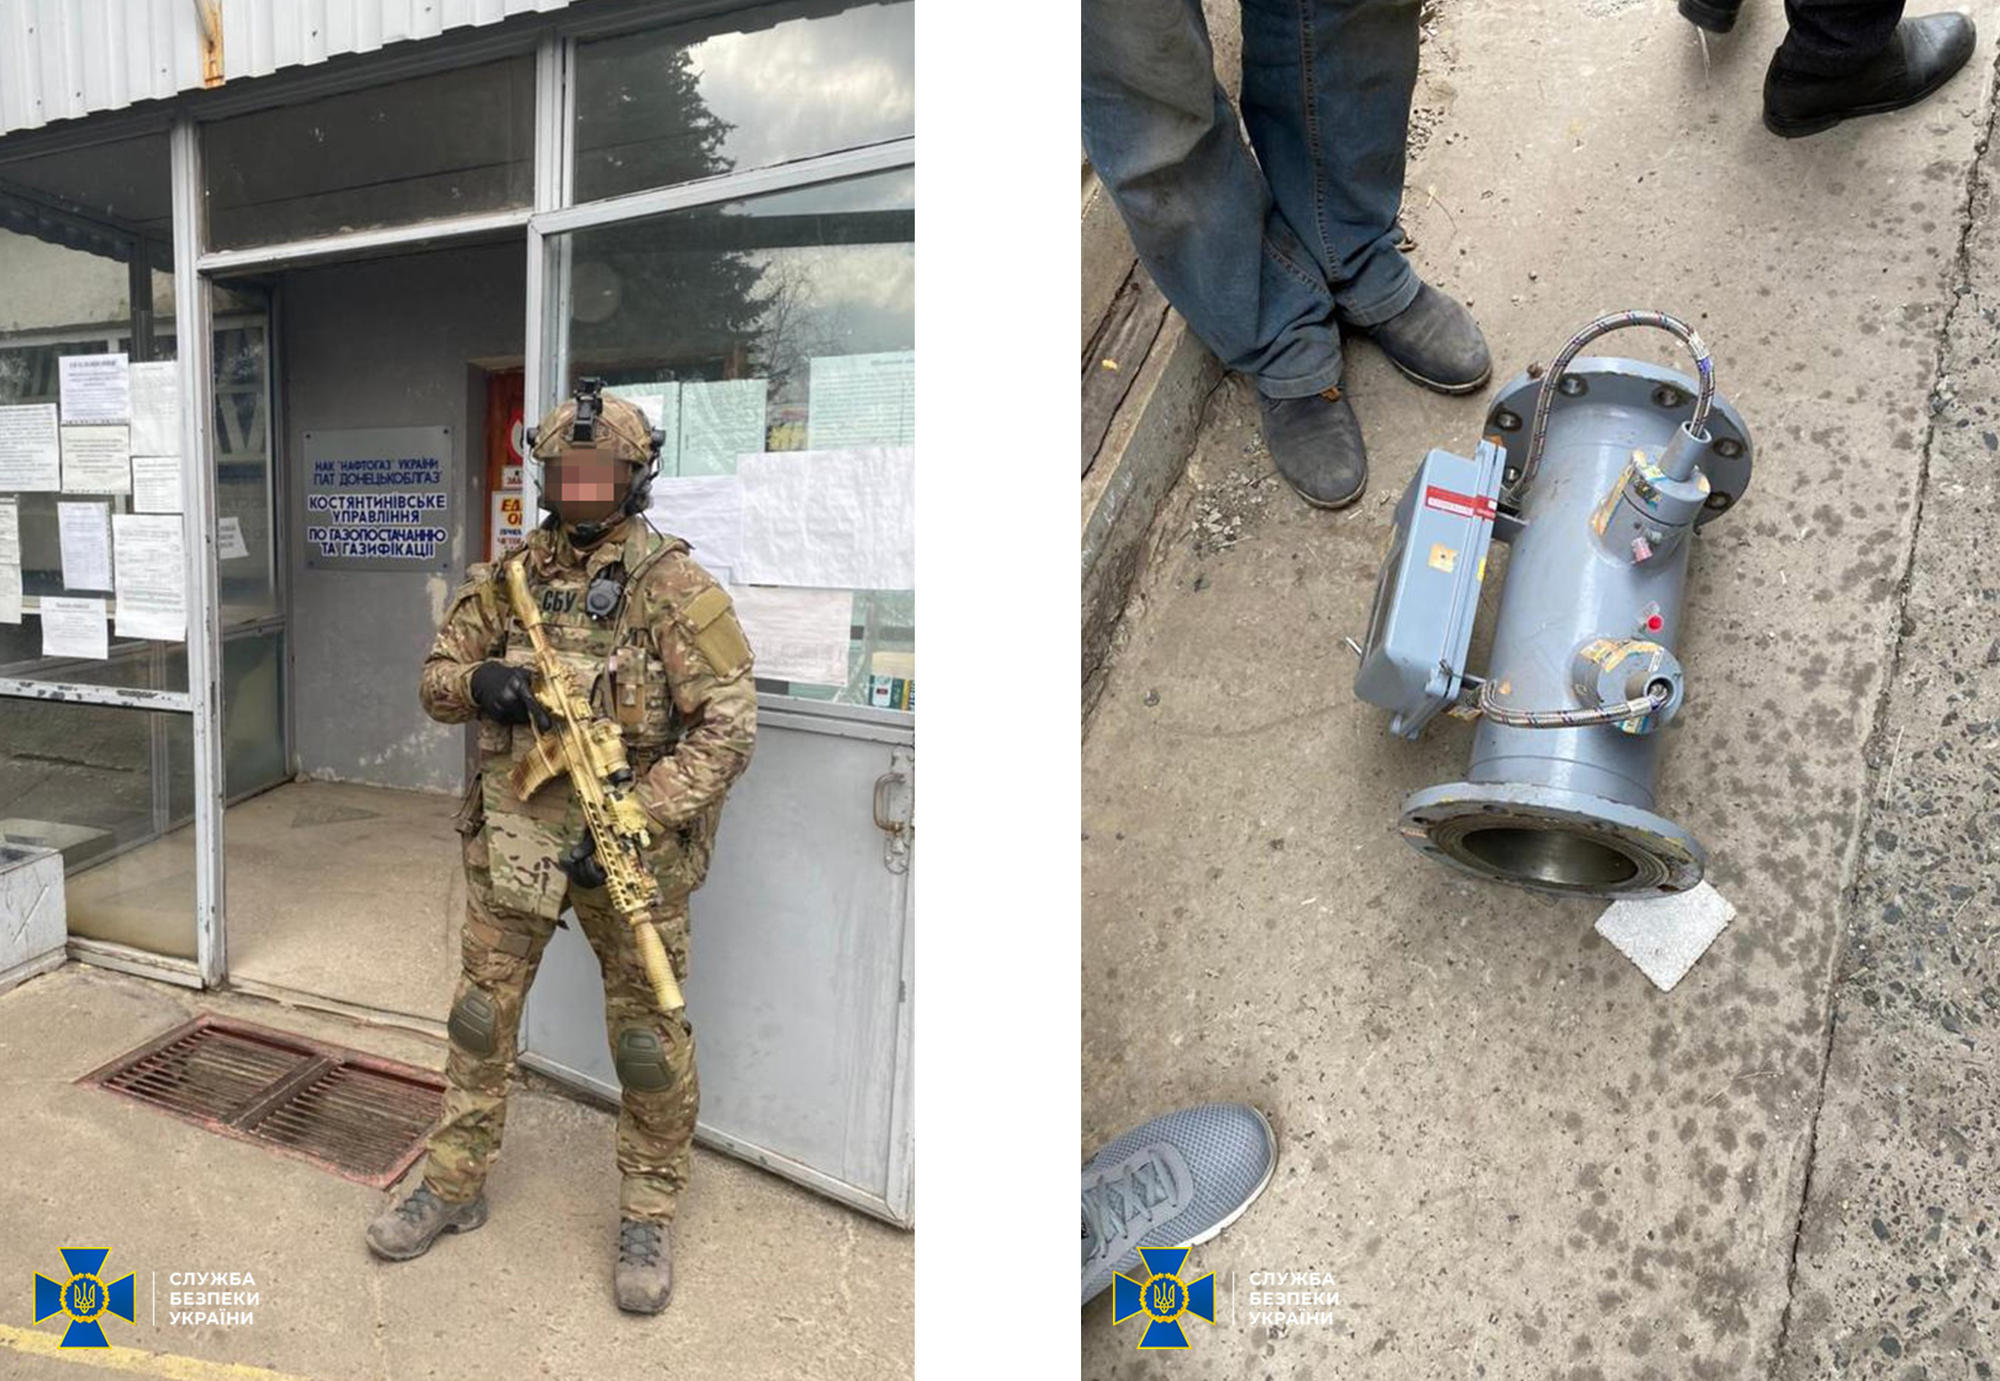 СБУ провела обыски в отделениях "Донецкоблгаза" по факту хищения топлива